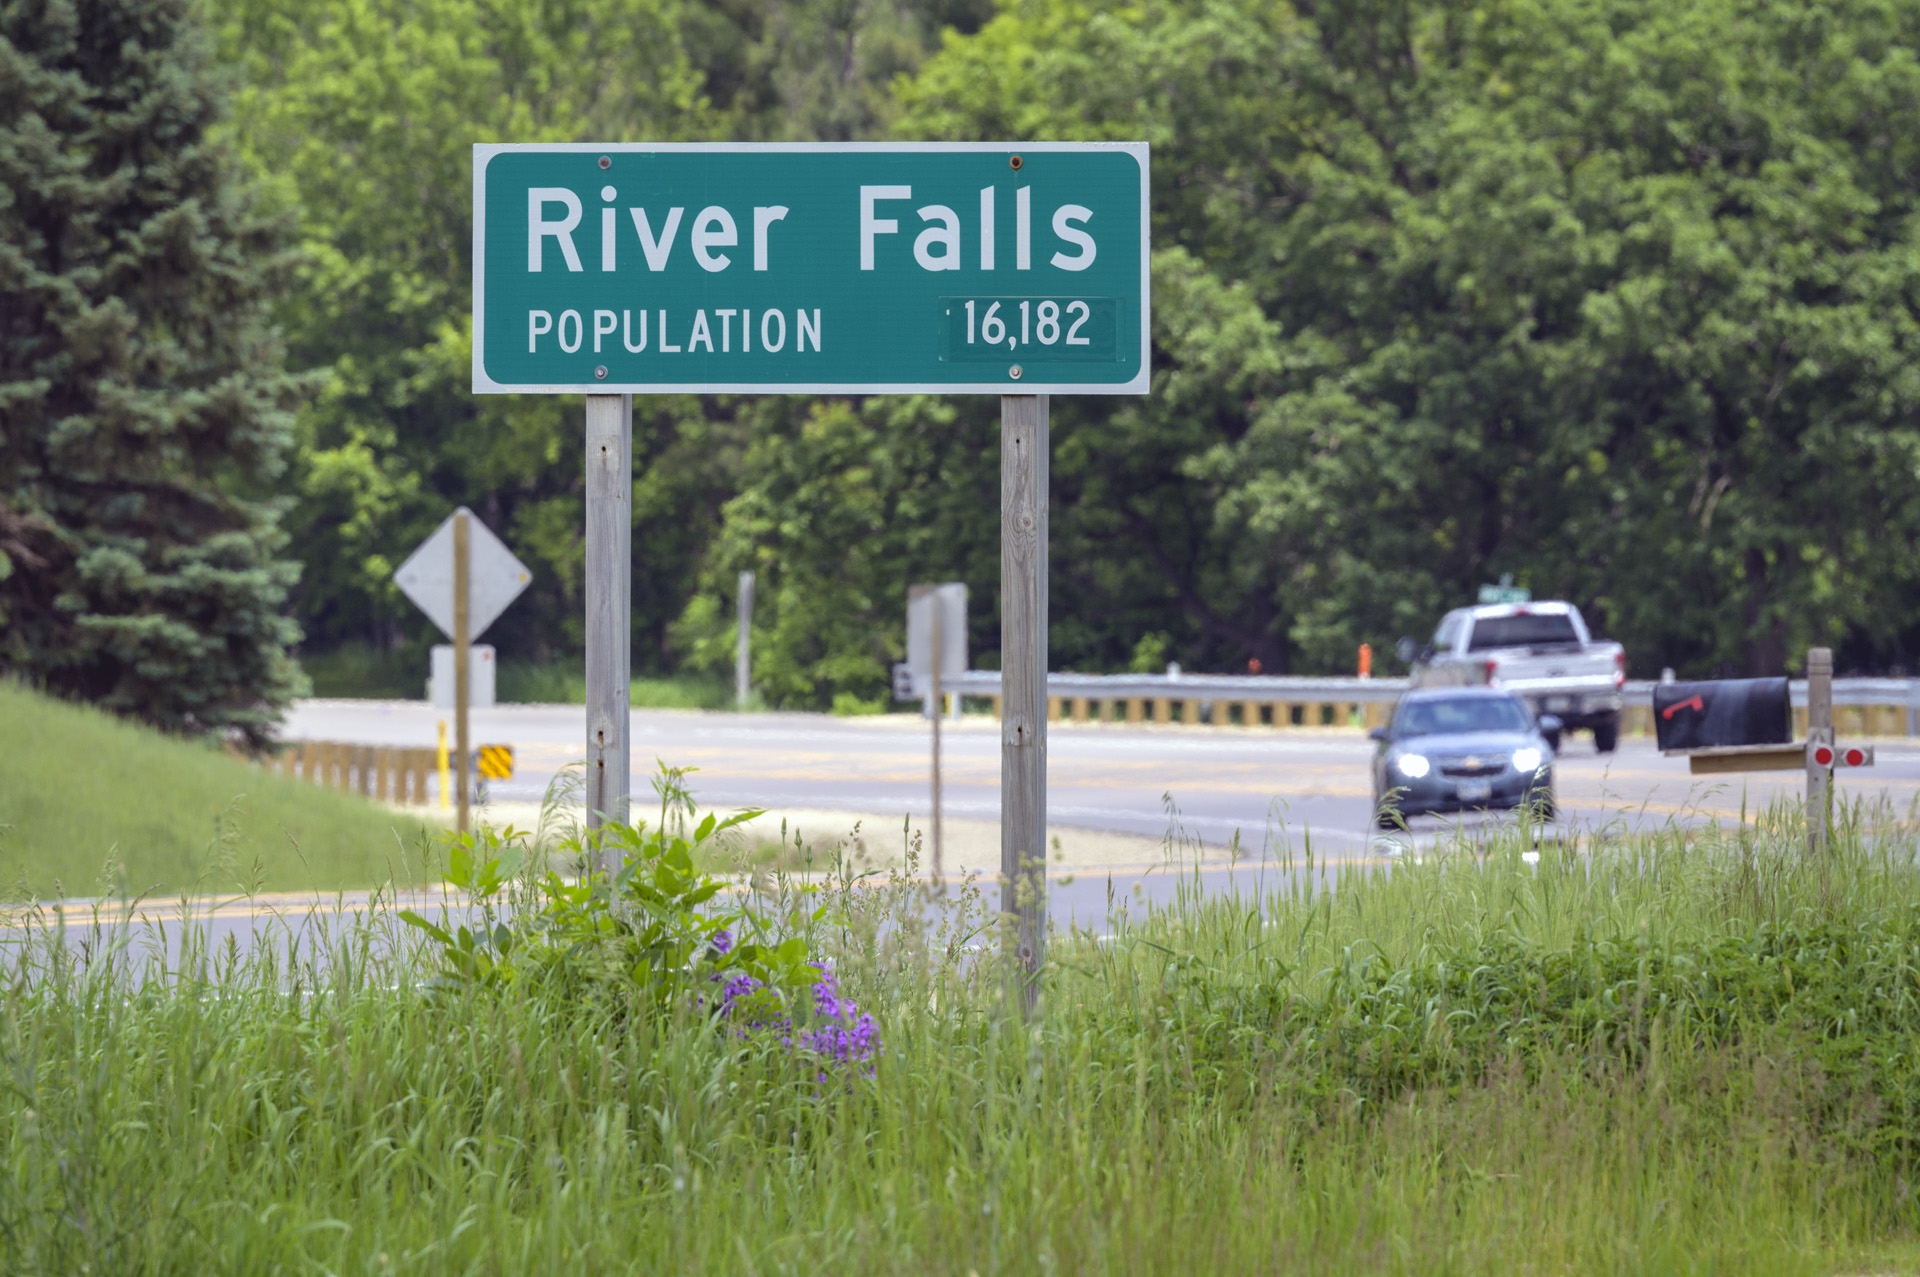 River Falls population